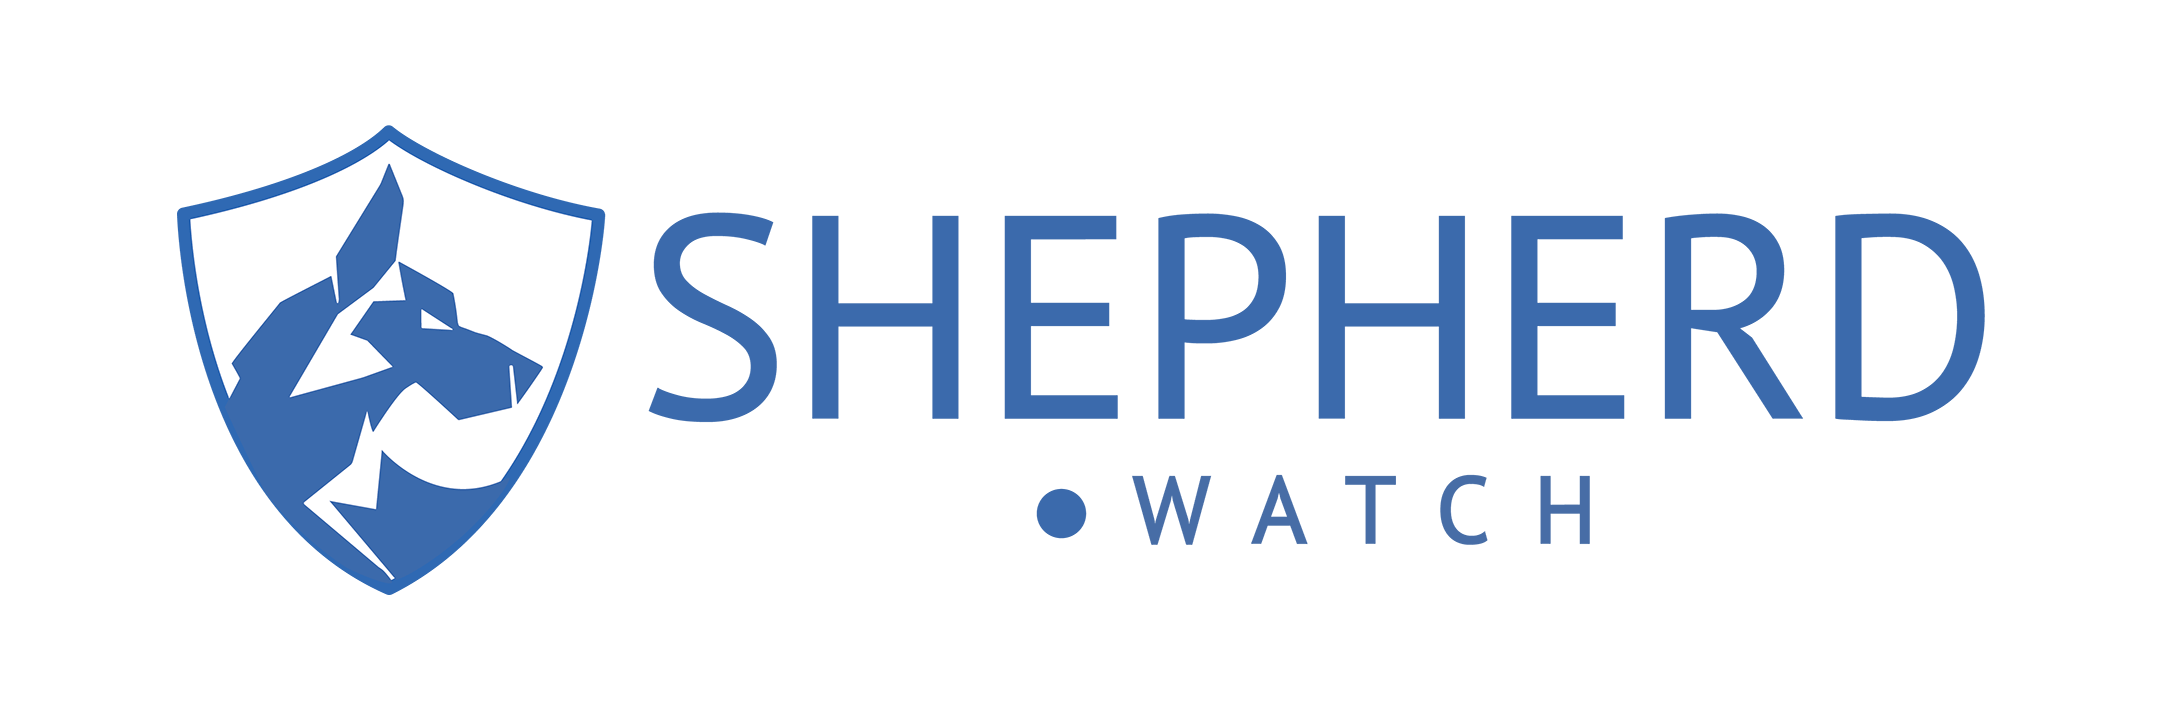 Shepherd Watch